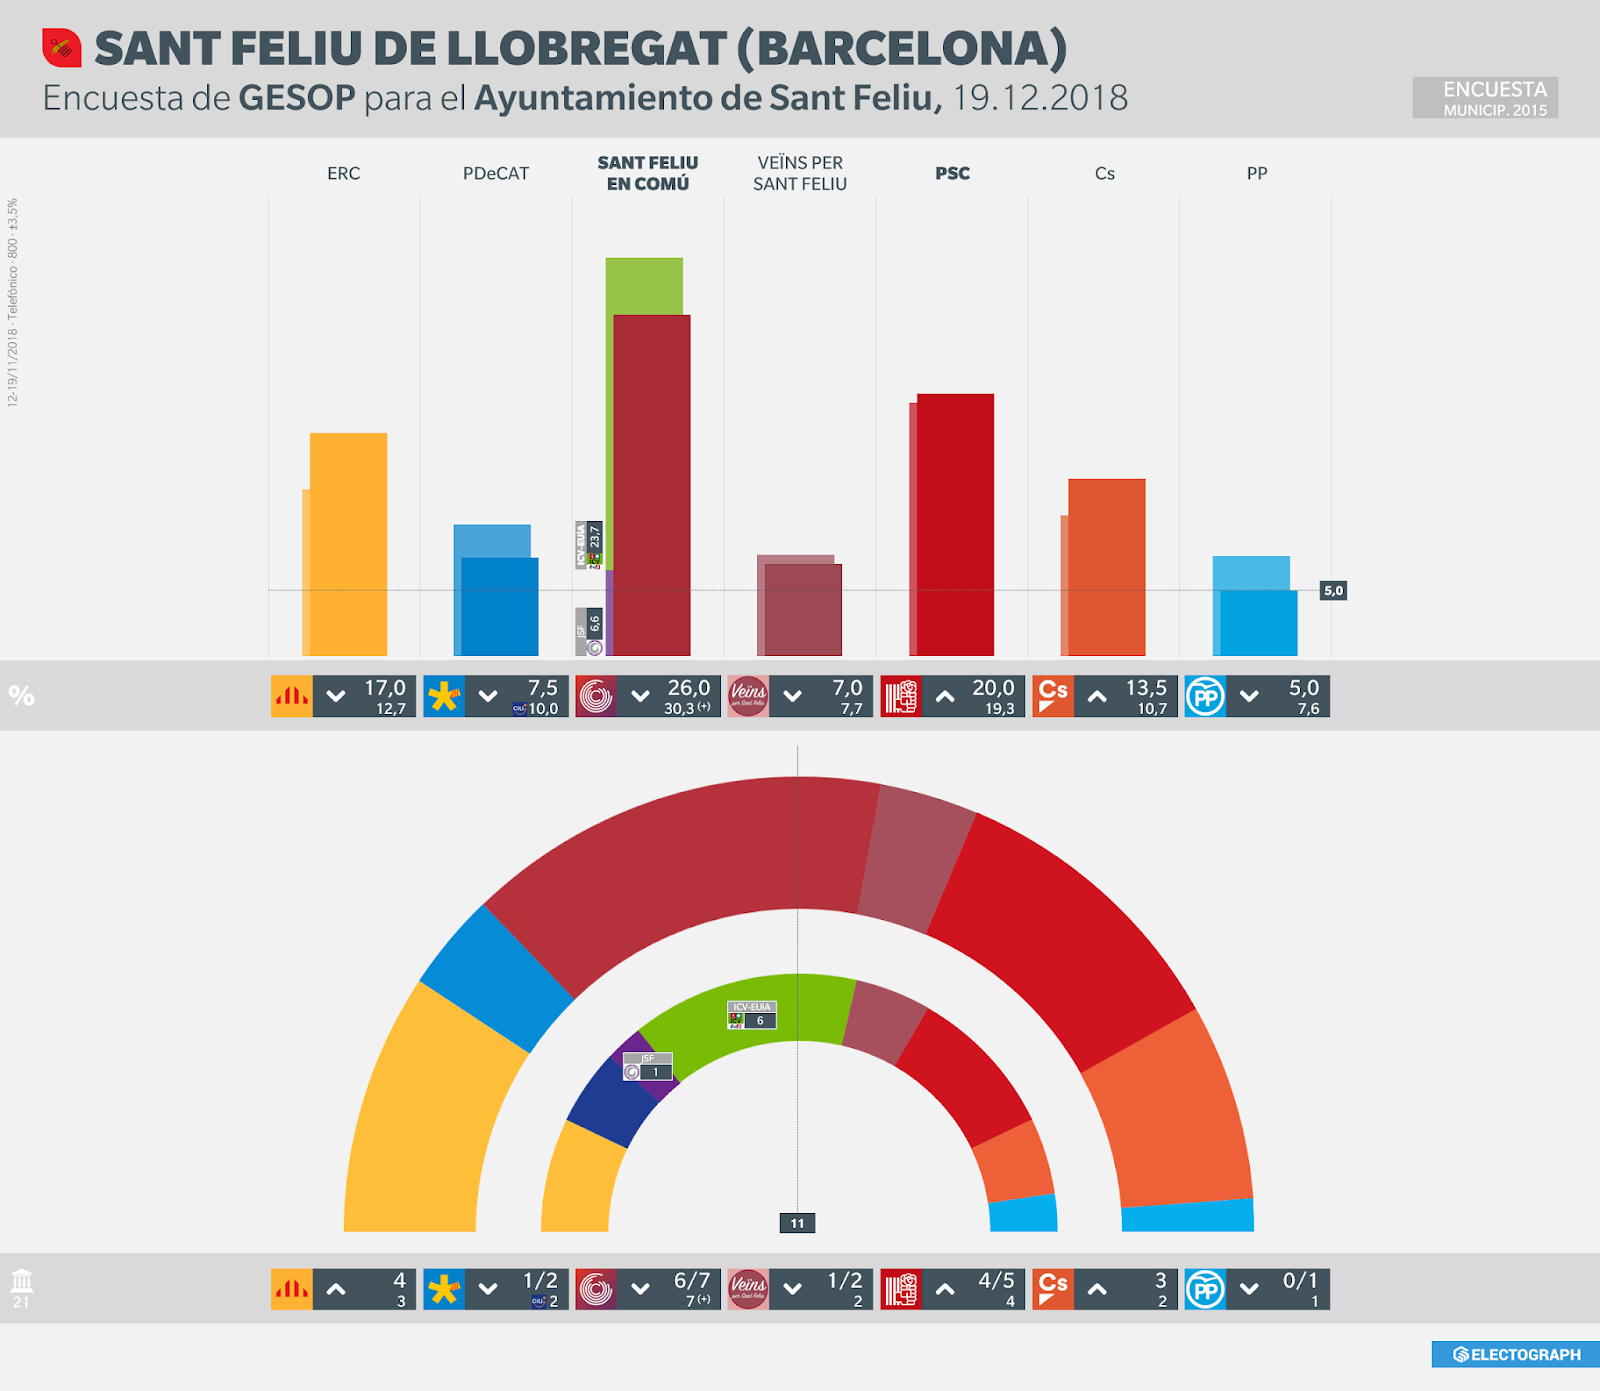 Gráfico de la encuesta para elecciones municipales en Sant Feliu de Llobregat realizada por GESOP para el Ayuntamiento, 19 de diciembre de 2018